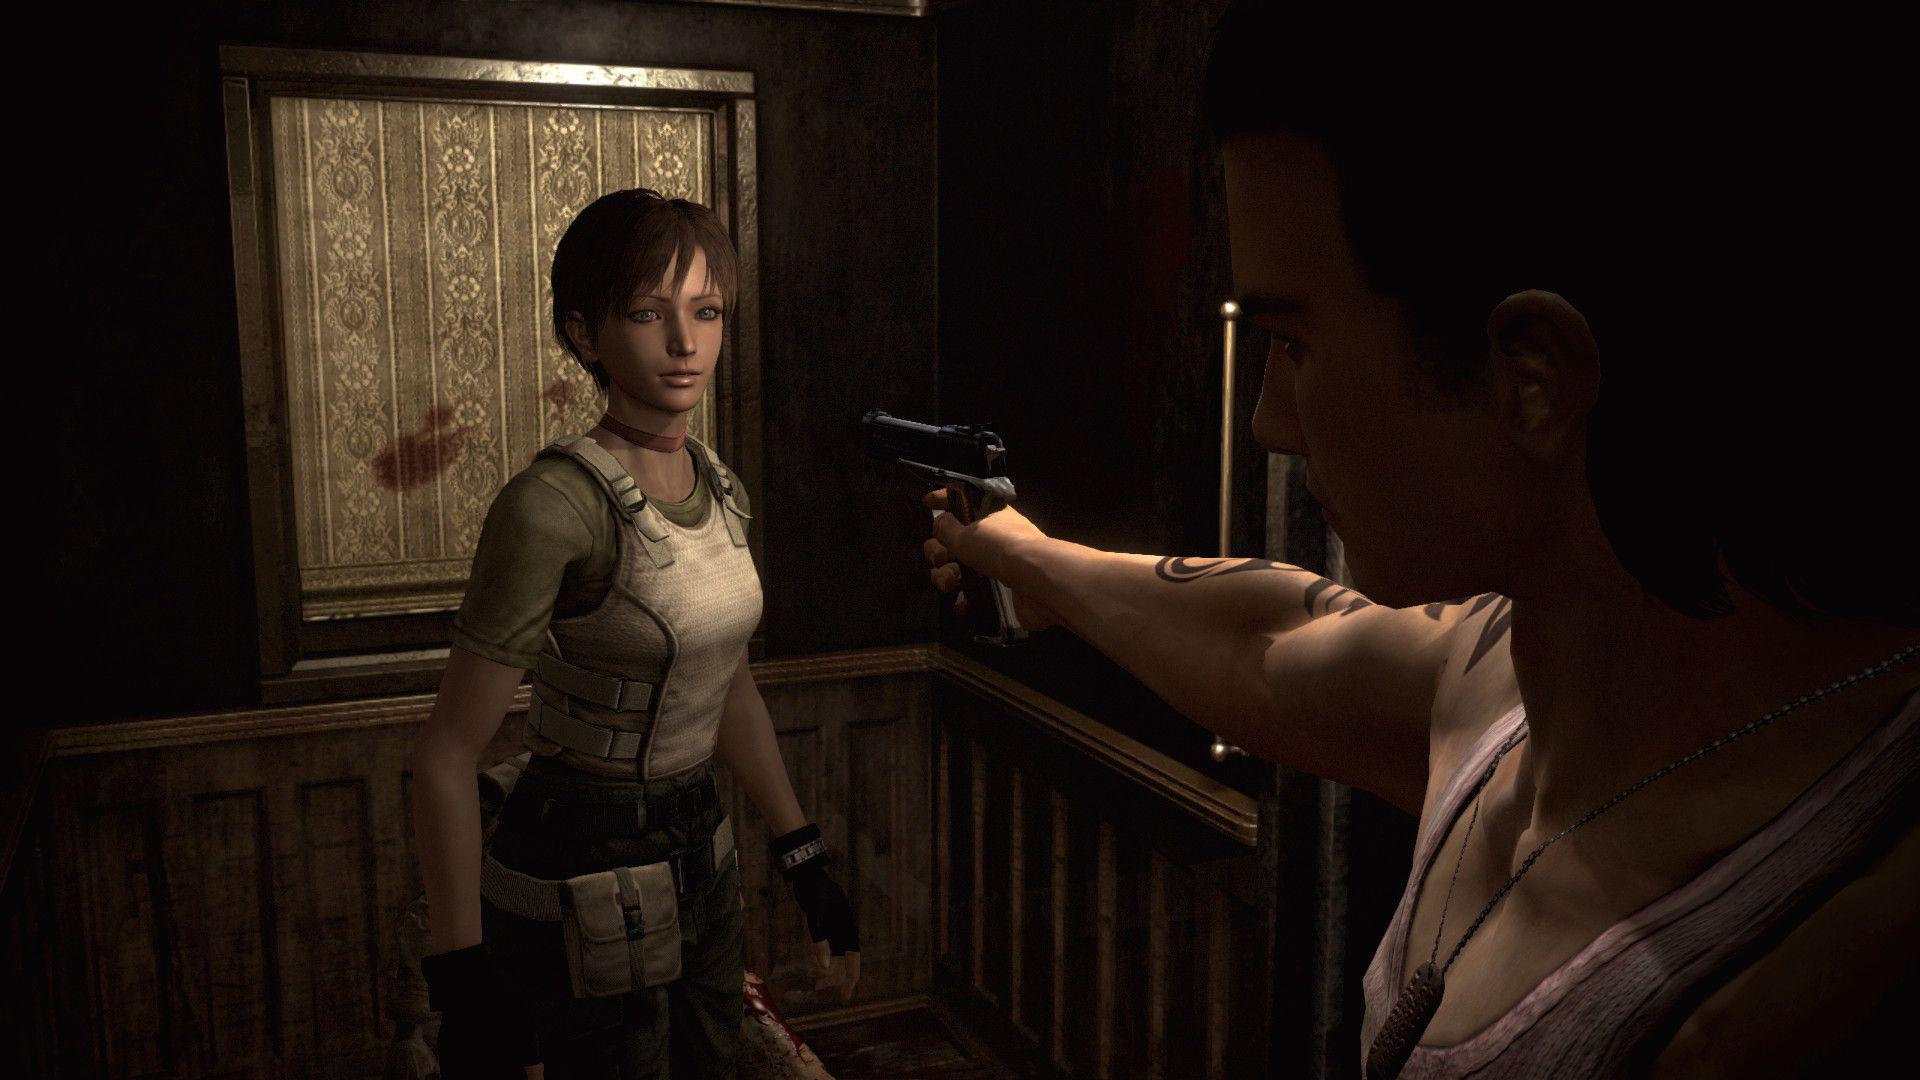 Resident Evil deve seguir com Sheva, Carlos e outros personagens esquecidos